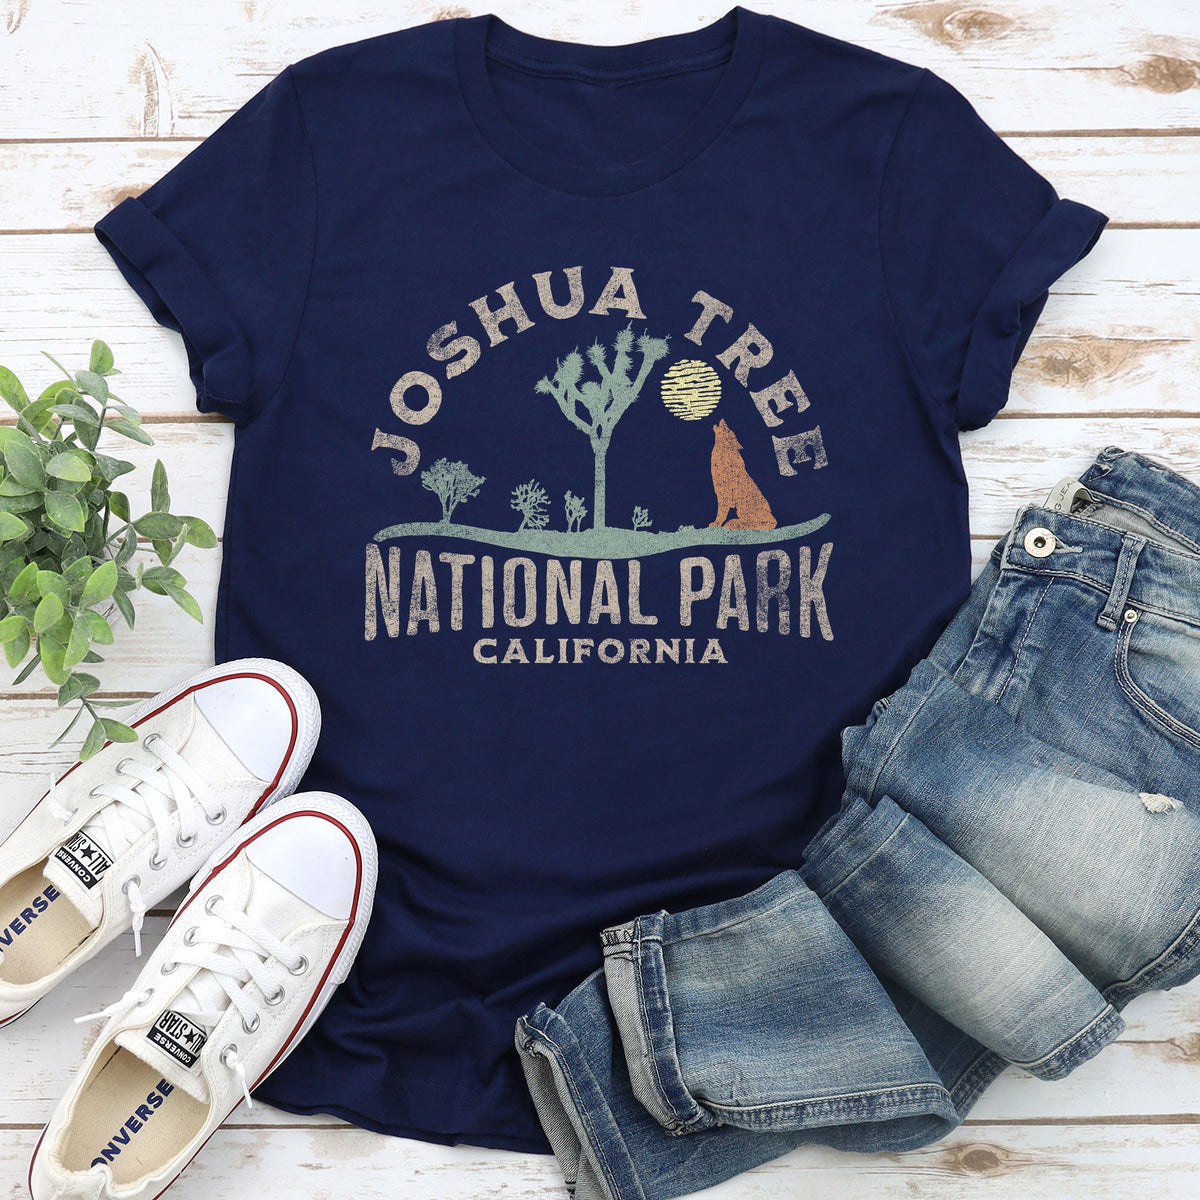 Joshua Tree National Park Super Soft Tshirt